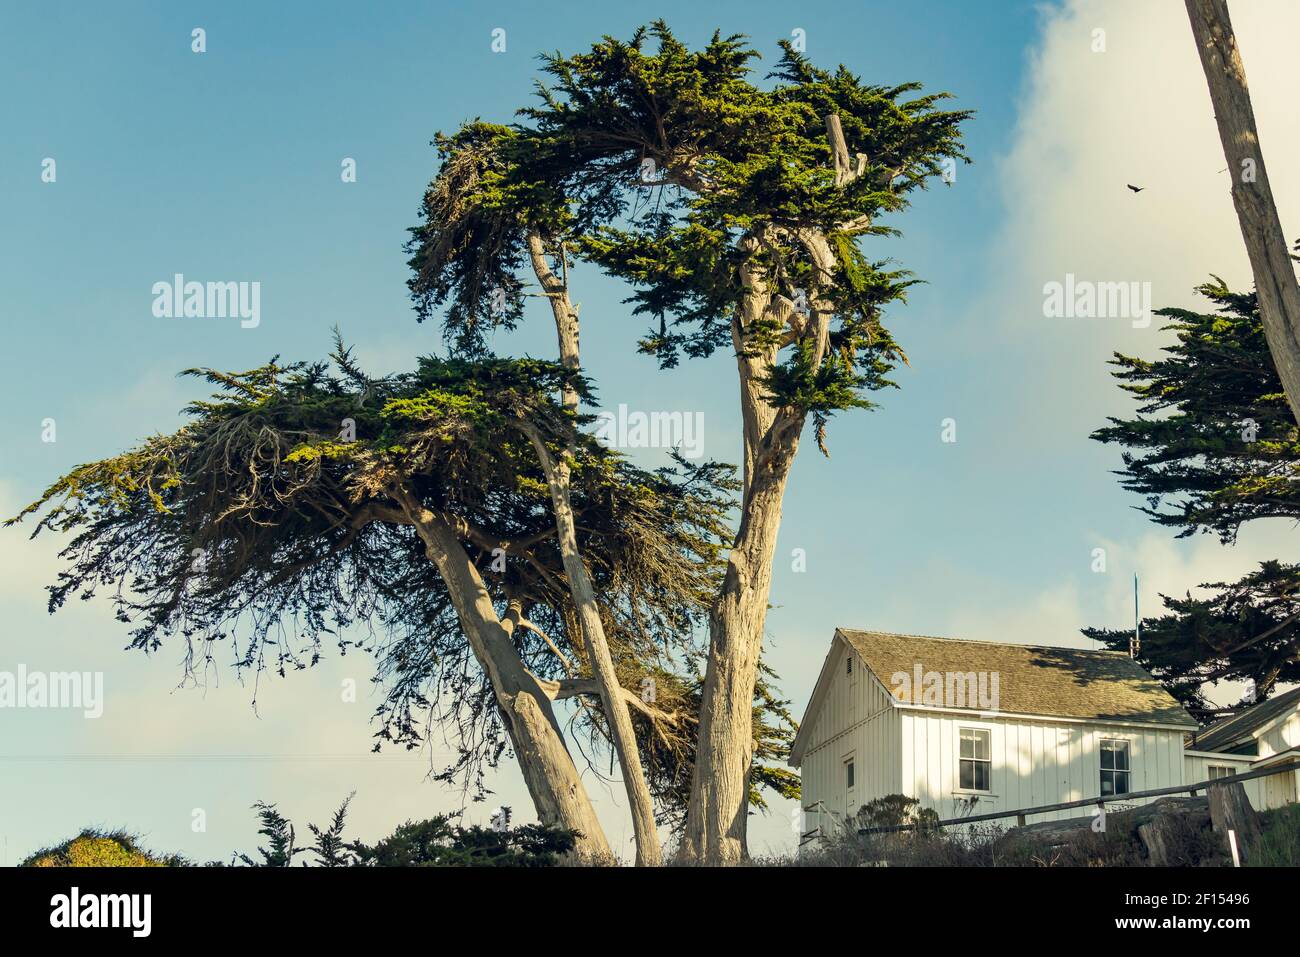 Blick auf den Zypressenbaum. Schöne Aussicht auf Bäume, Haus auf dem Hügel, und bewölkten Himmel im Hintergrund, Kalifornien Landschaft Stockfoto